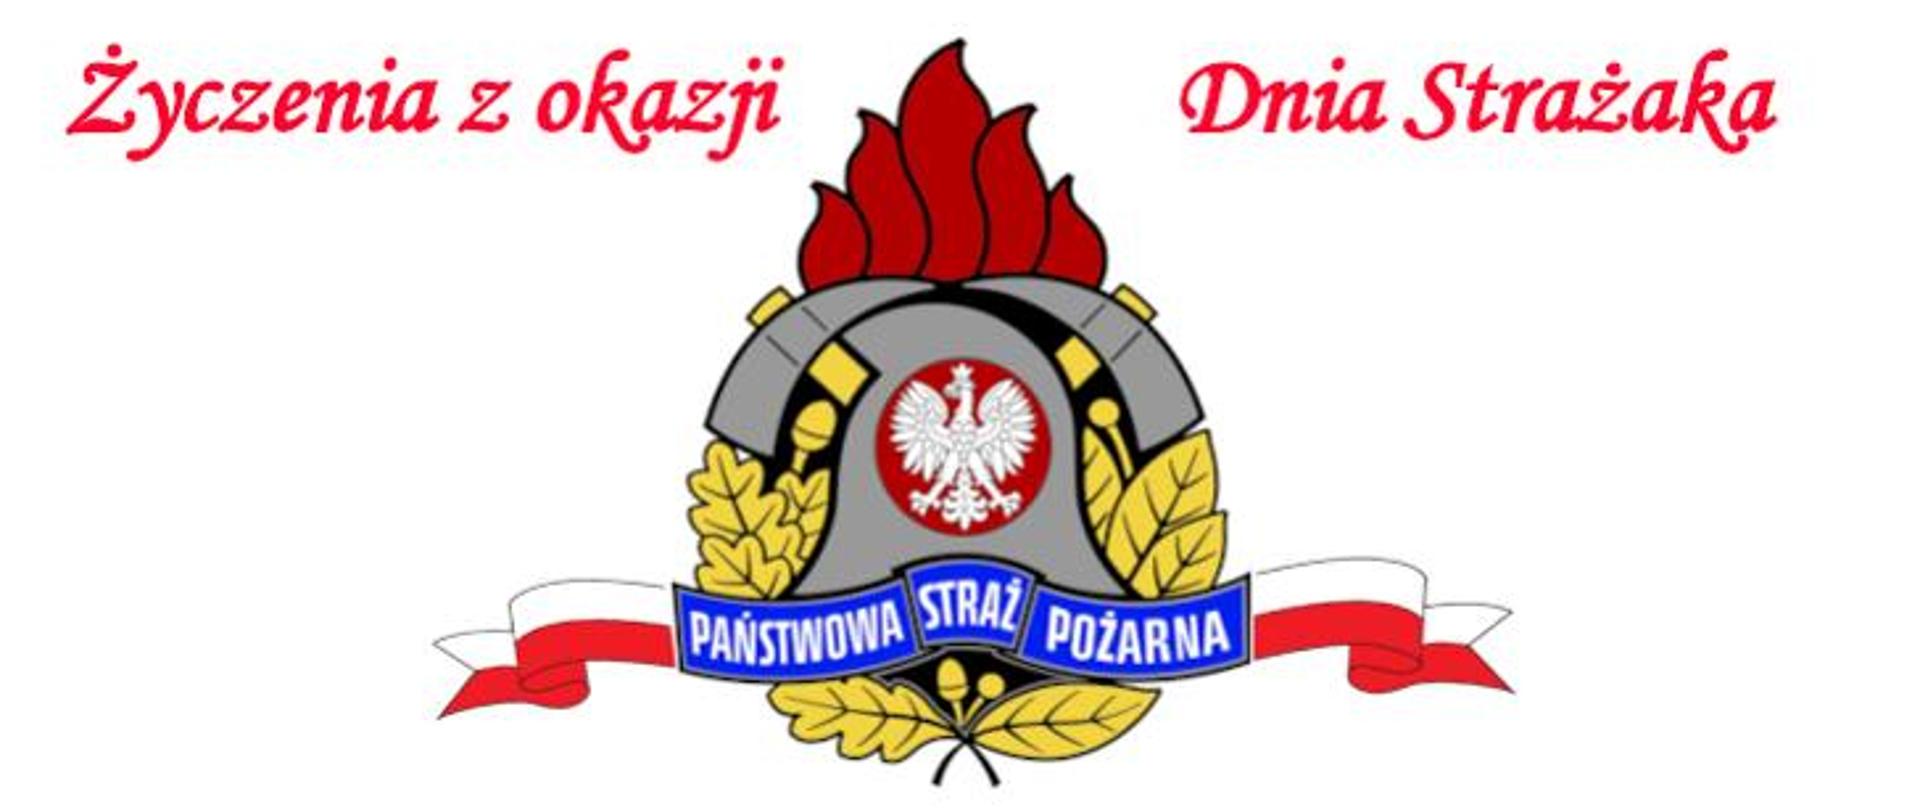 Na zdjęciu w centralnej części widać logo Państwowej Straży Pożarnej na białym tle, do góry napis Życzenia z okazji Dnia Strażaka